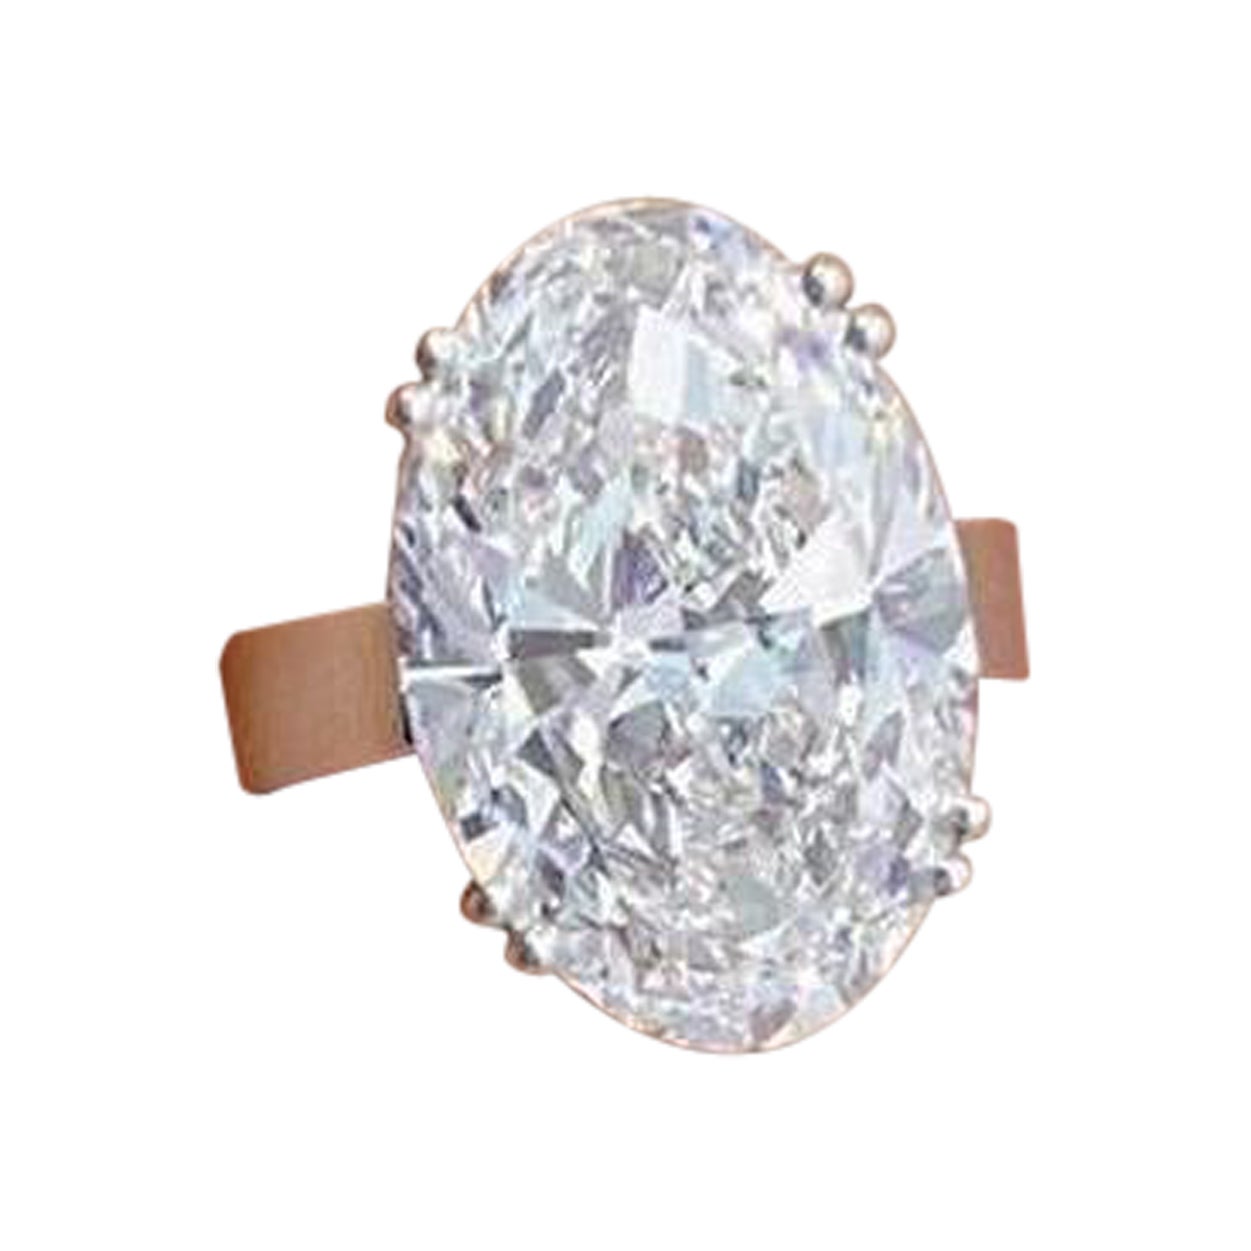 Wir präsentieren einen Verlobungsring von außergewöhnlicher Schönheit mit einem GIA-zertifizierten 6-Karat-Diamanten. Der zentrale Stein mit GIA-Zertifikat ist ein seltener Qualitätsdiamant mit einem Gewicht von 6 Karat, einem Farbgrad von E und